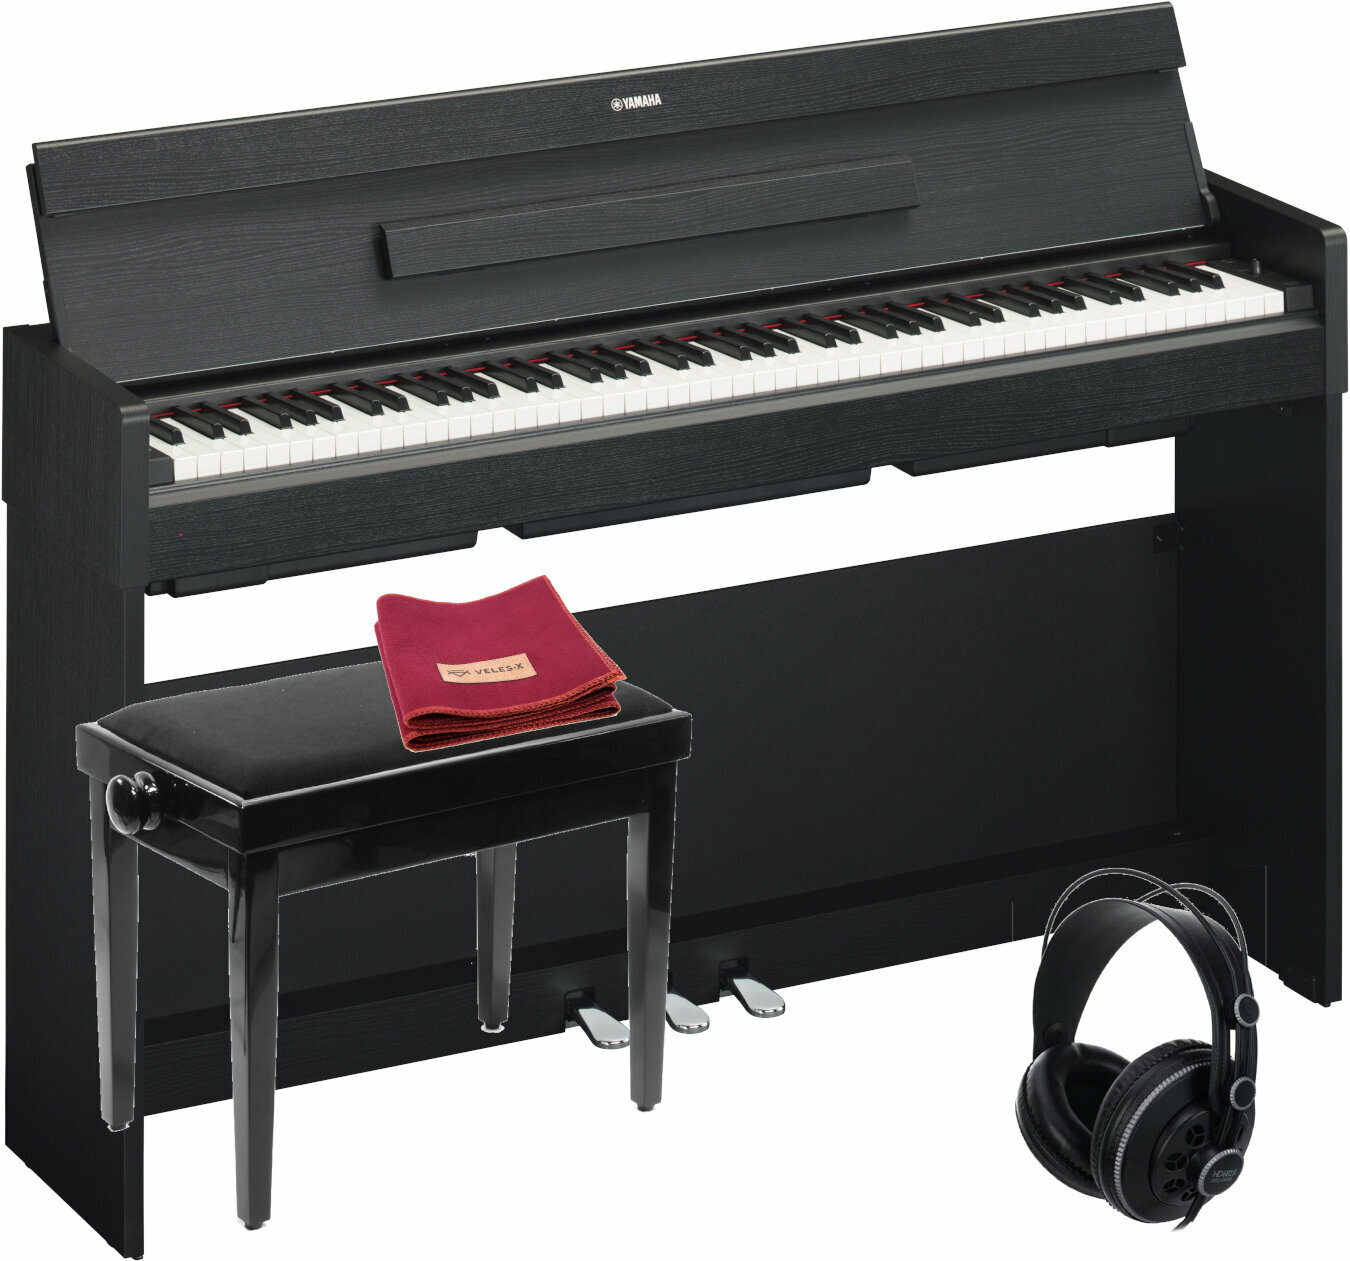 Ψηφιακό Πιάνο Yamaha YDP-S34 Black SET Μαύρο Ψηφιακό Πιάνο